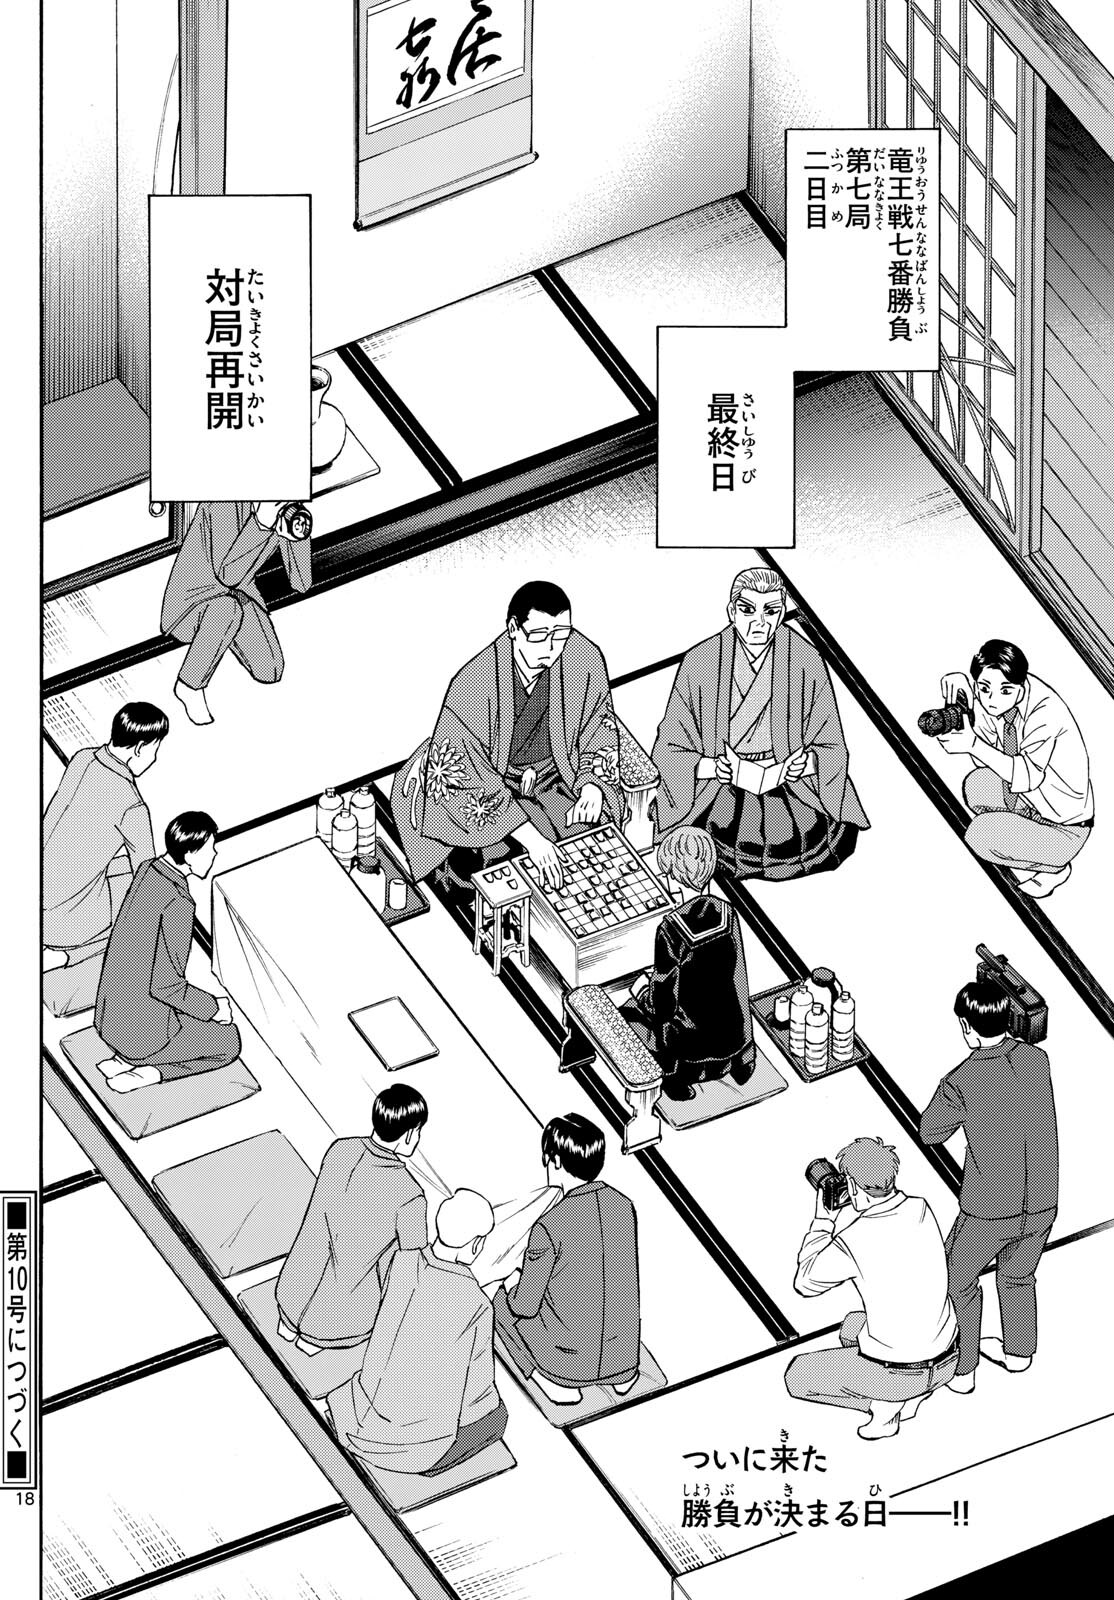 Tatsu to Ichigo - Chapter 176 - Page 18